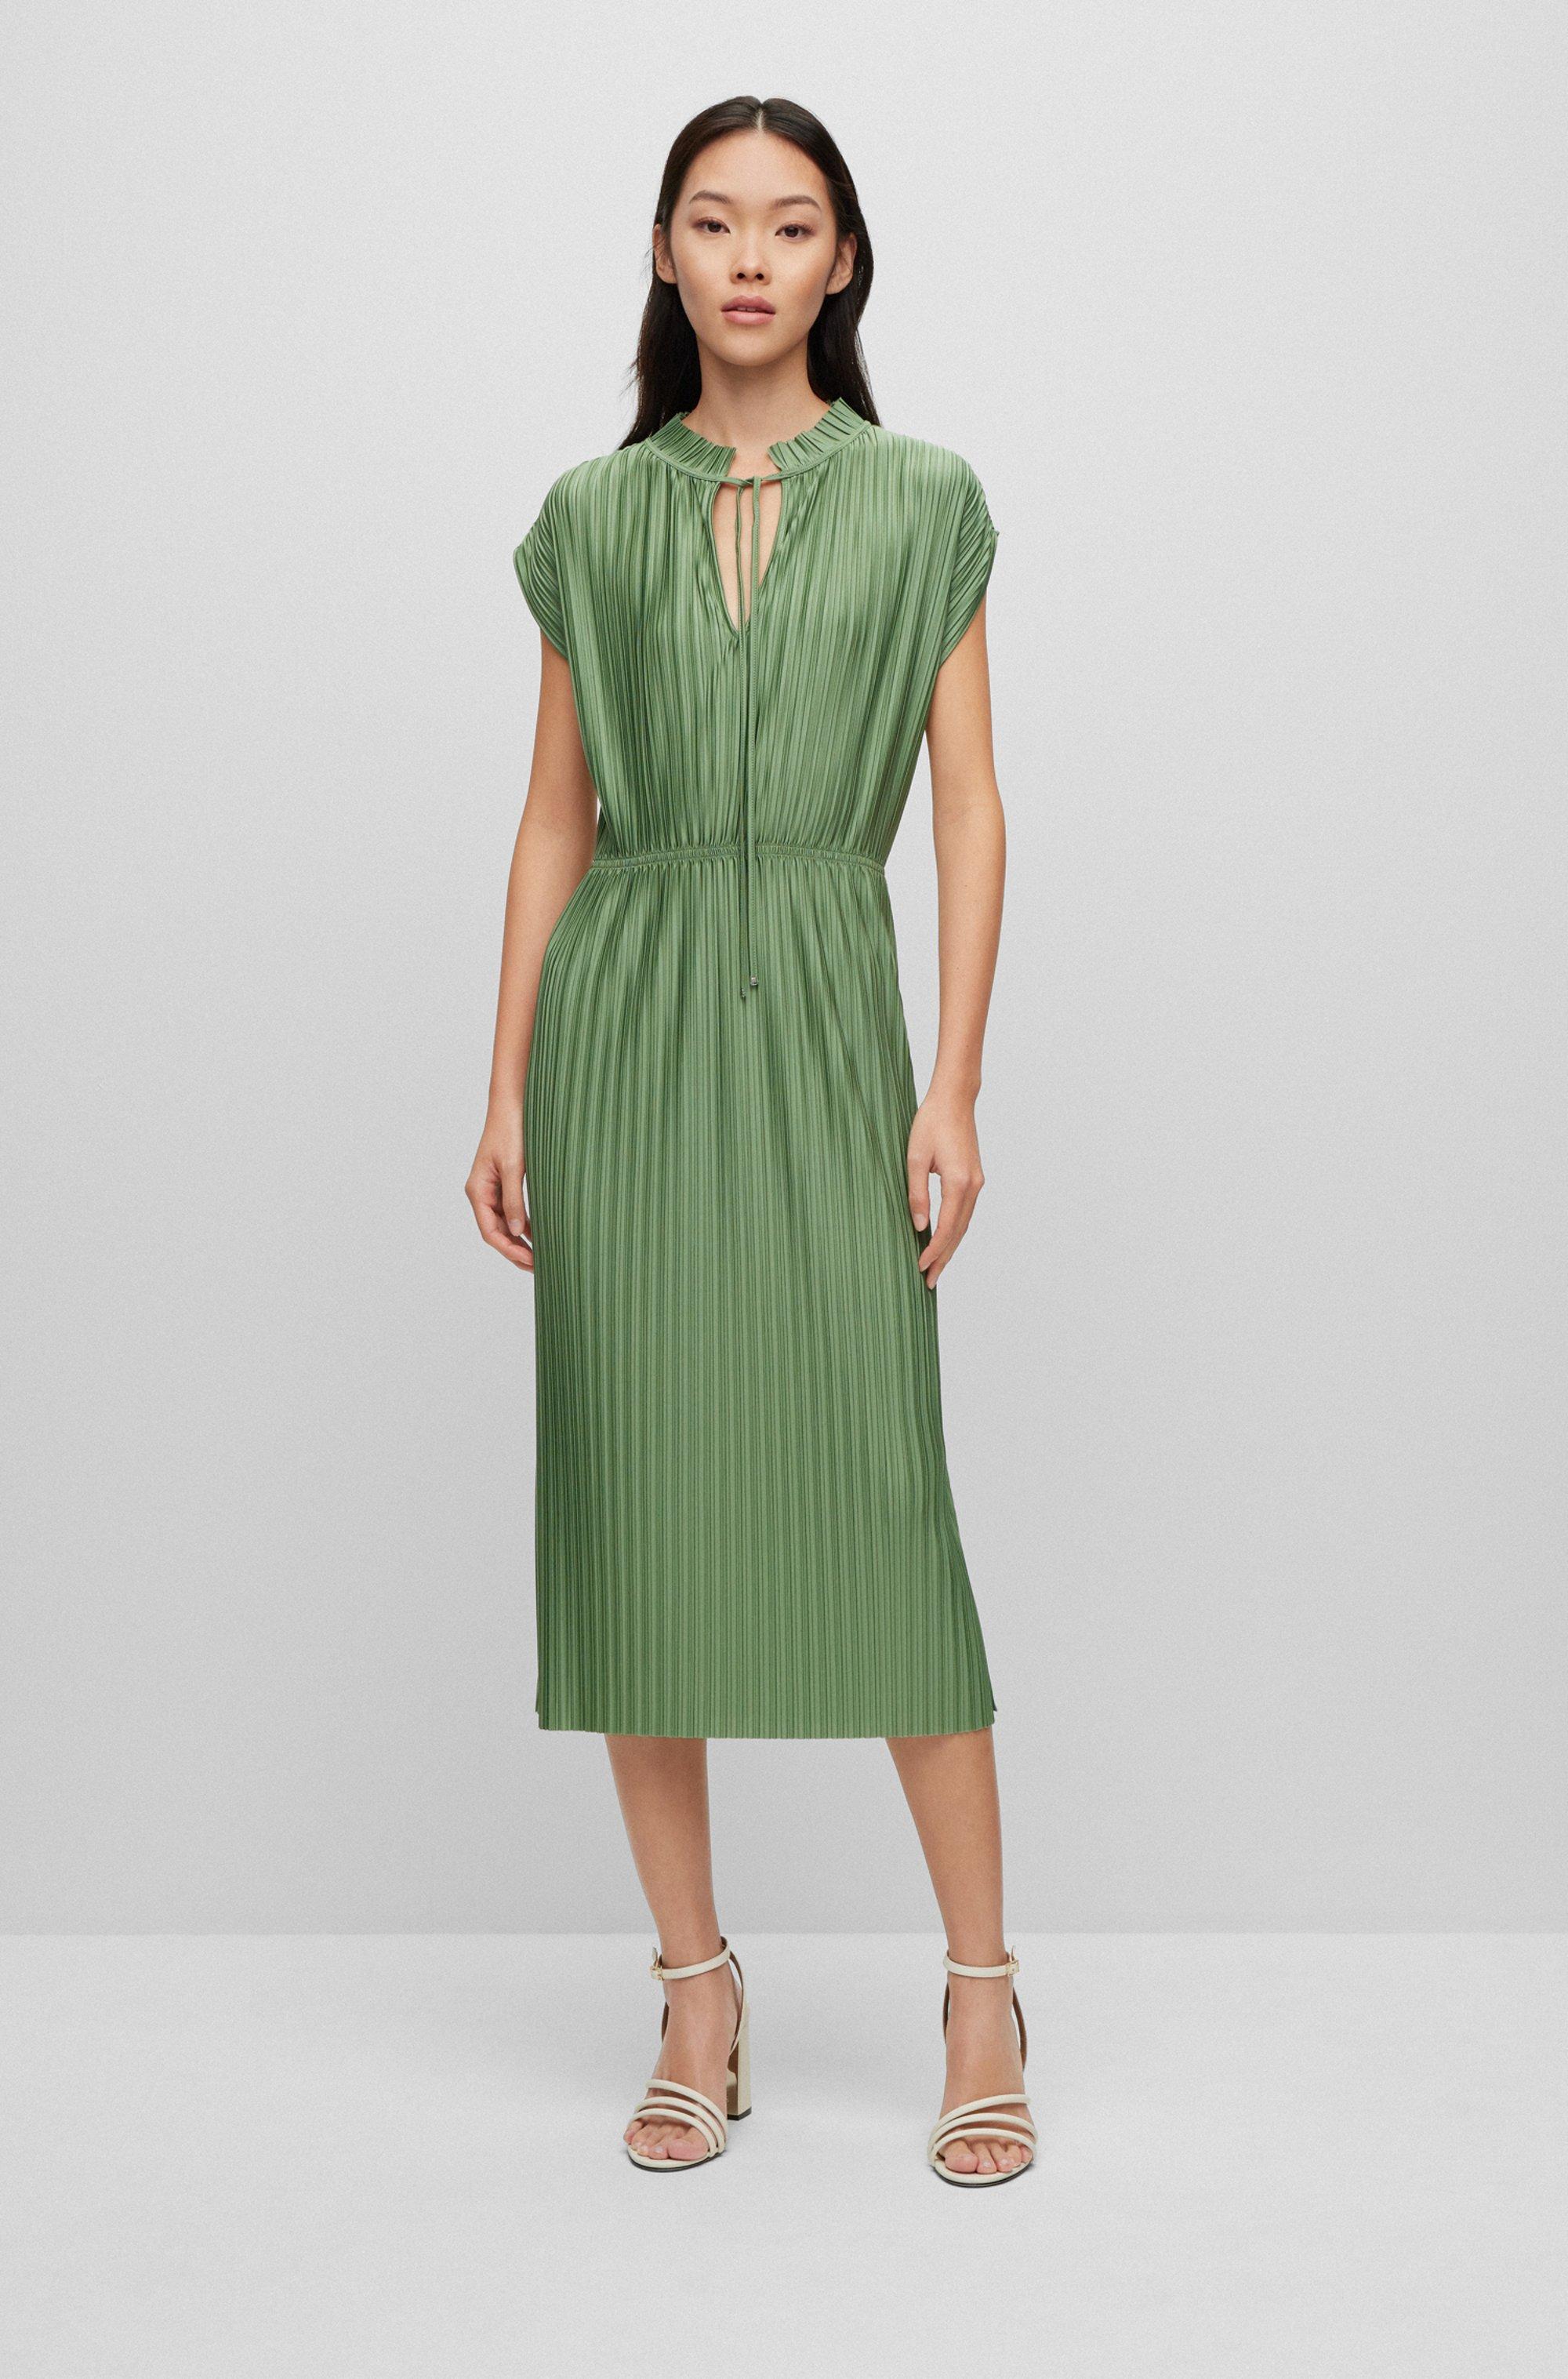 BOSS by HUGO BOSS Plissé Jersey Dress With Tie Neckline in Green | Lyst